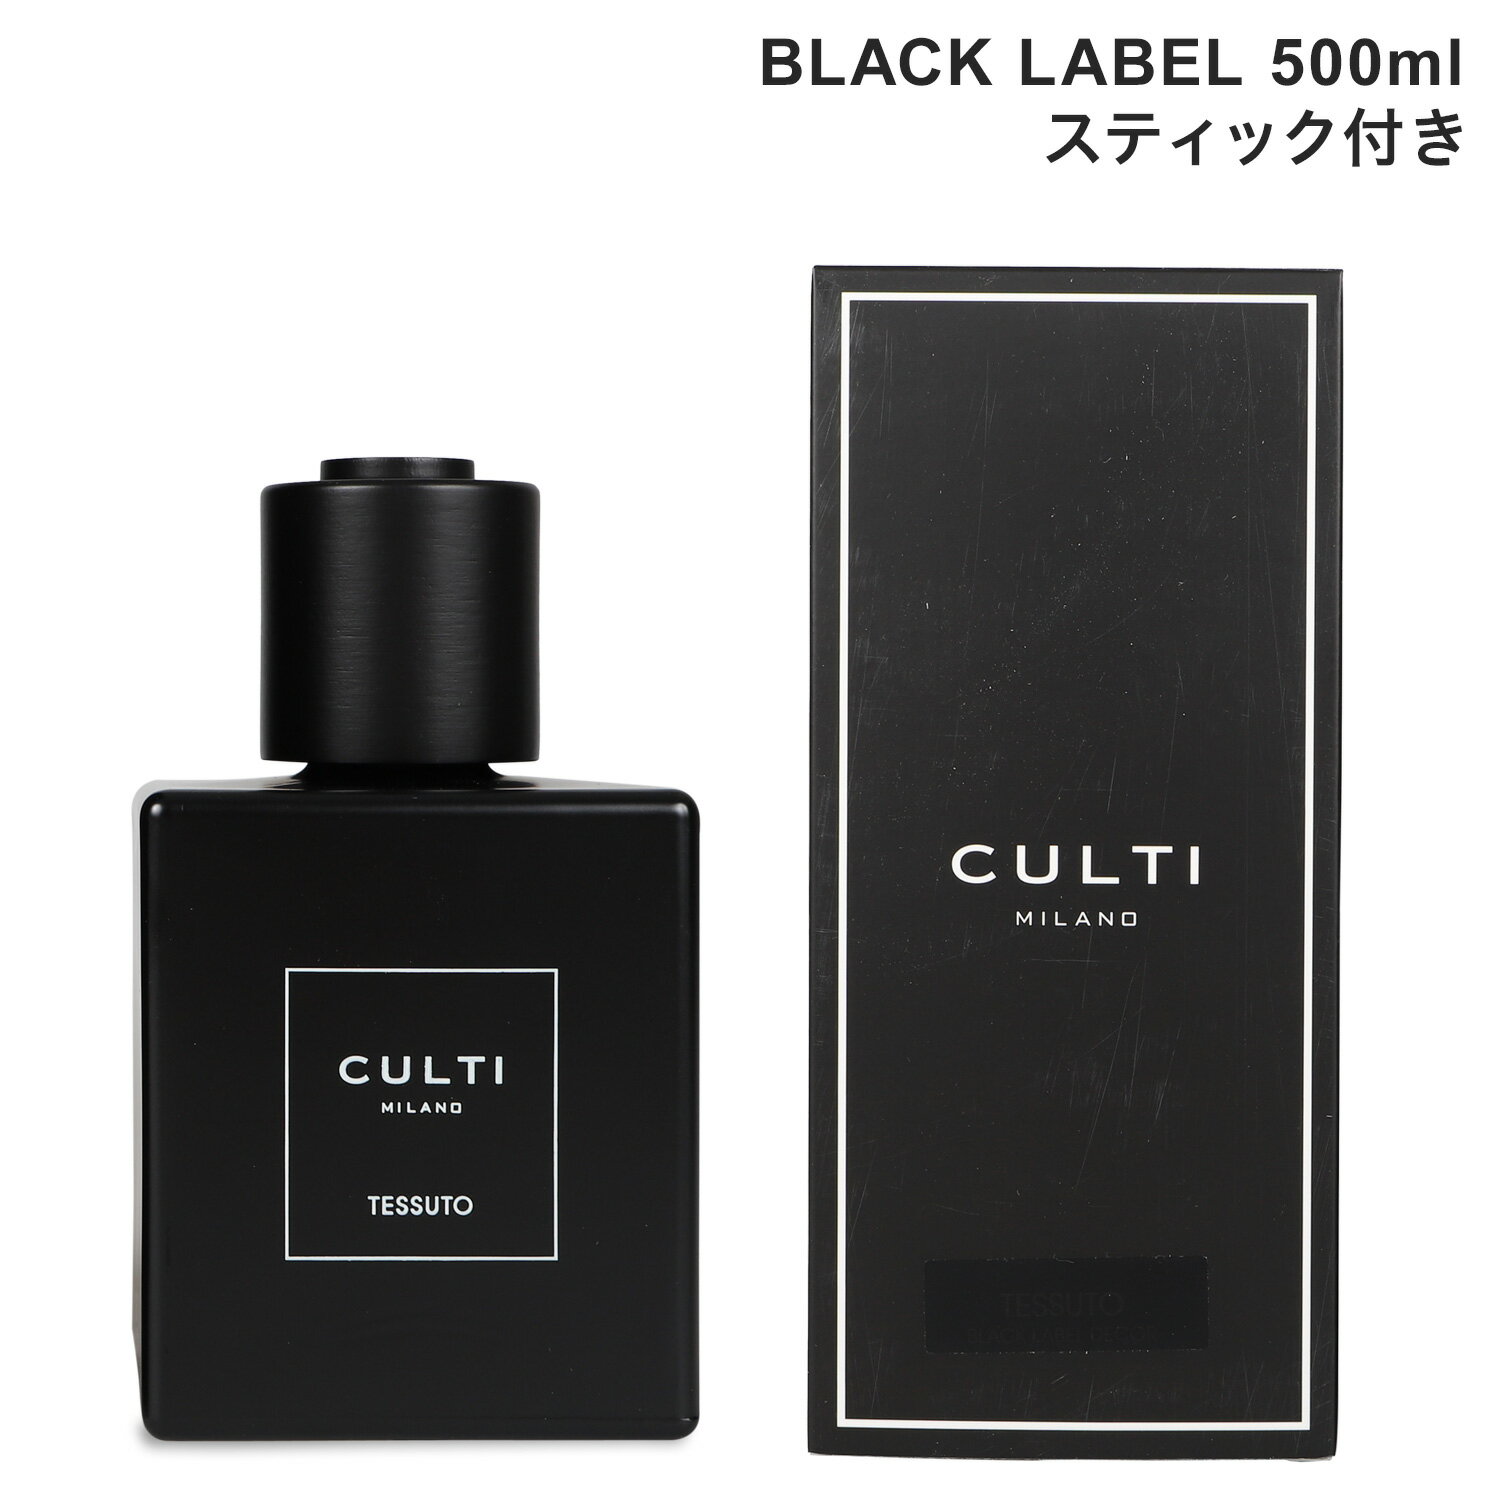 CULTI MILANO BLACK LABEL クルティ ミラノ ブラックレーベル ディフューザー ルームフレグランス 500ml スティック付き ガラスボトル